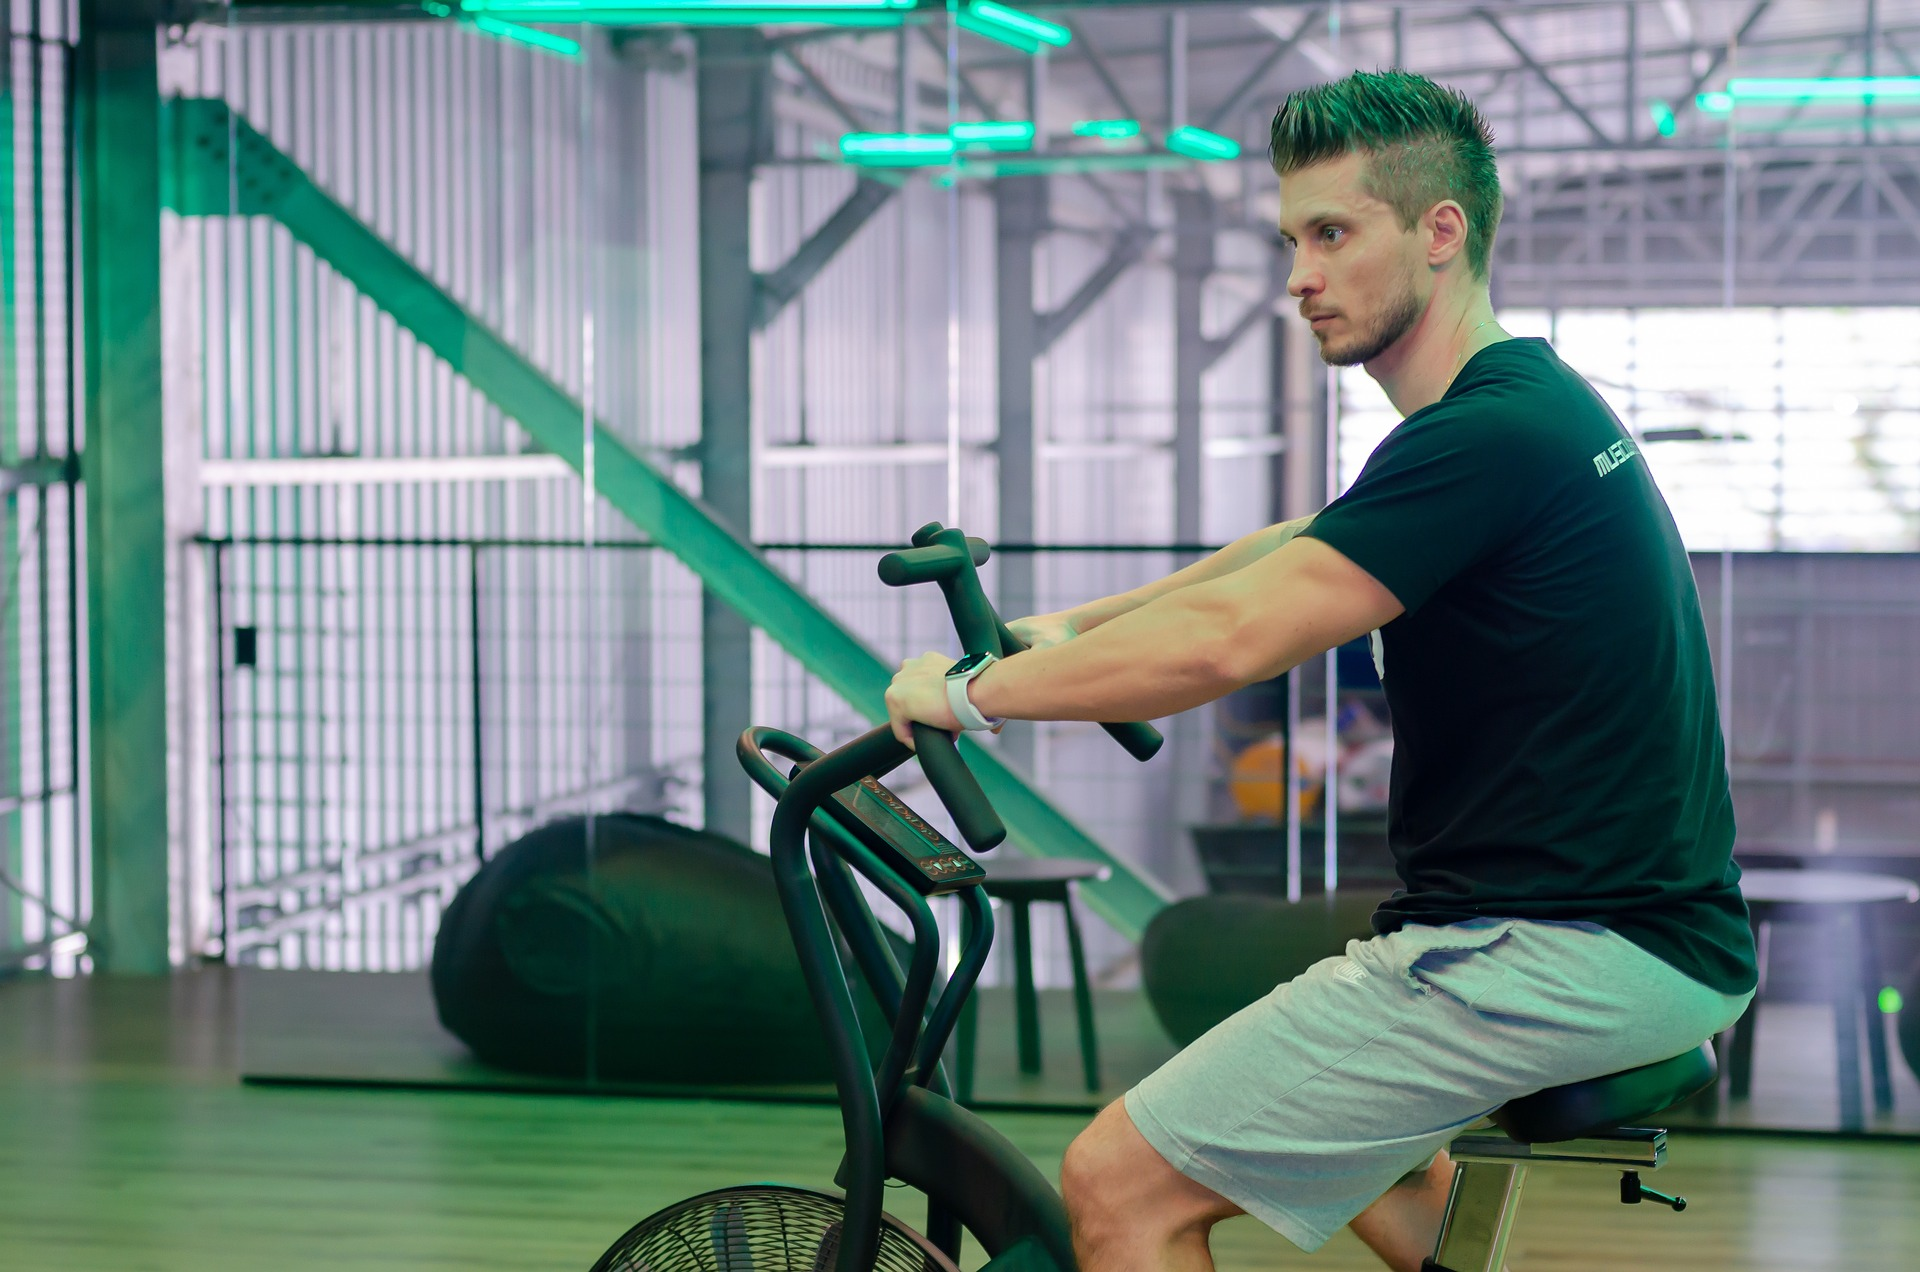 Ciclismo indoor na ergométrica - Fonte: Pixabay - Musculação MM2020